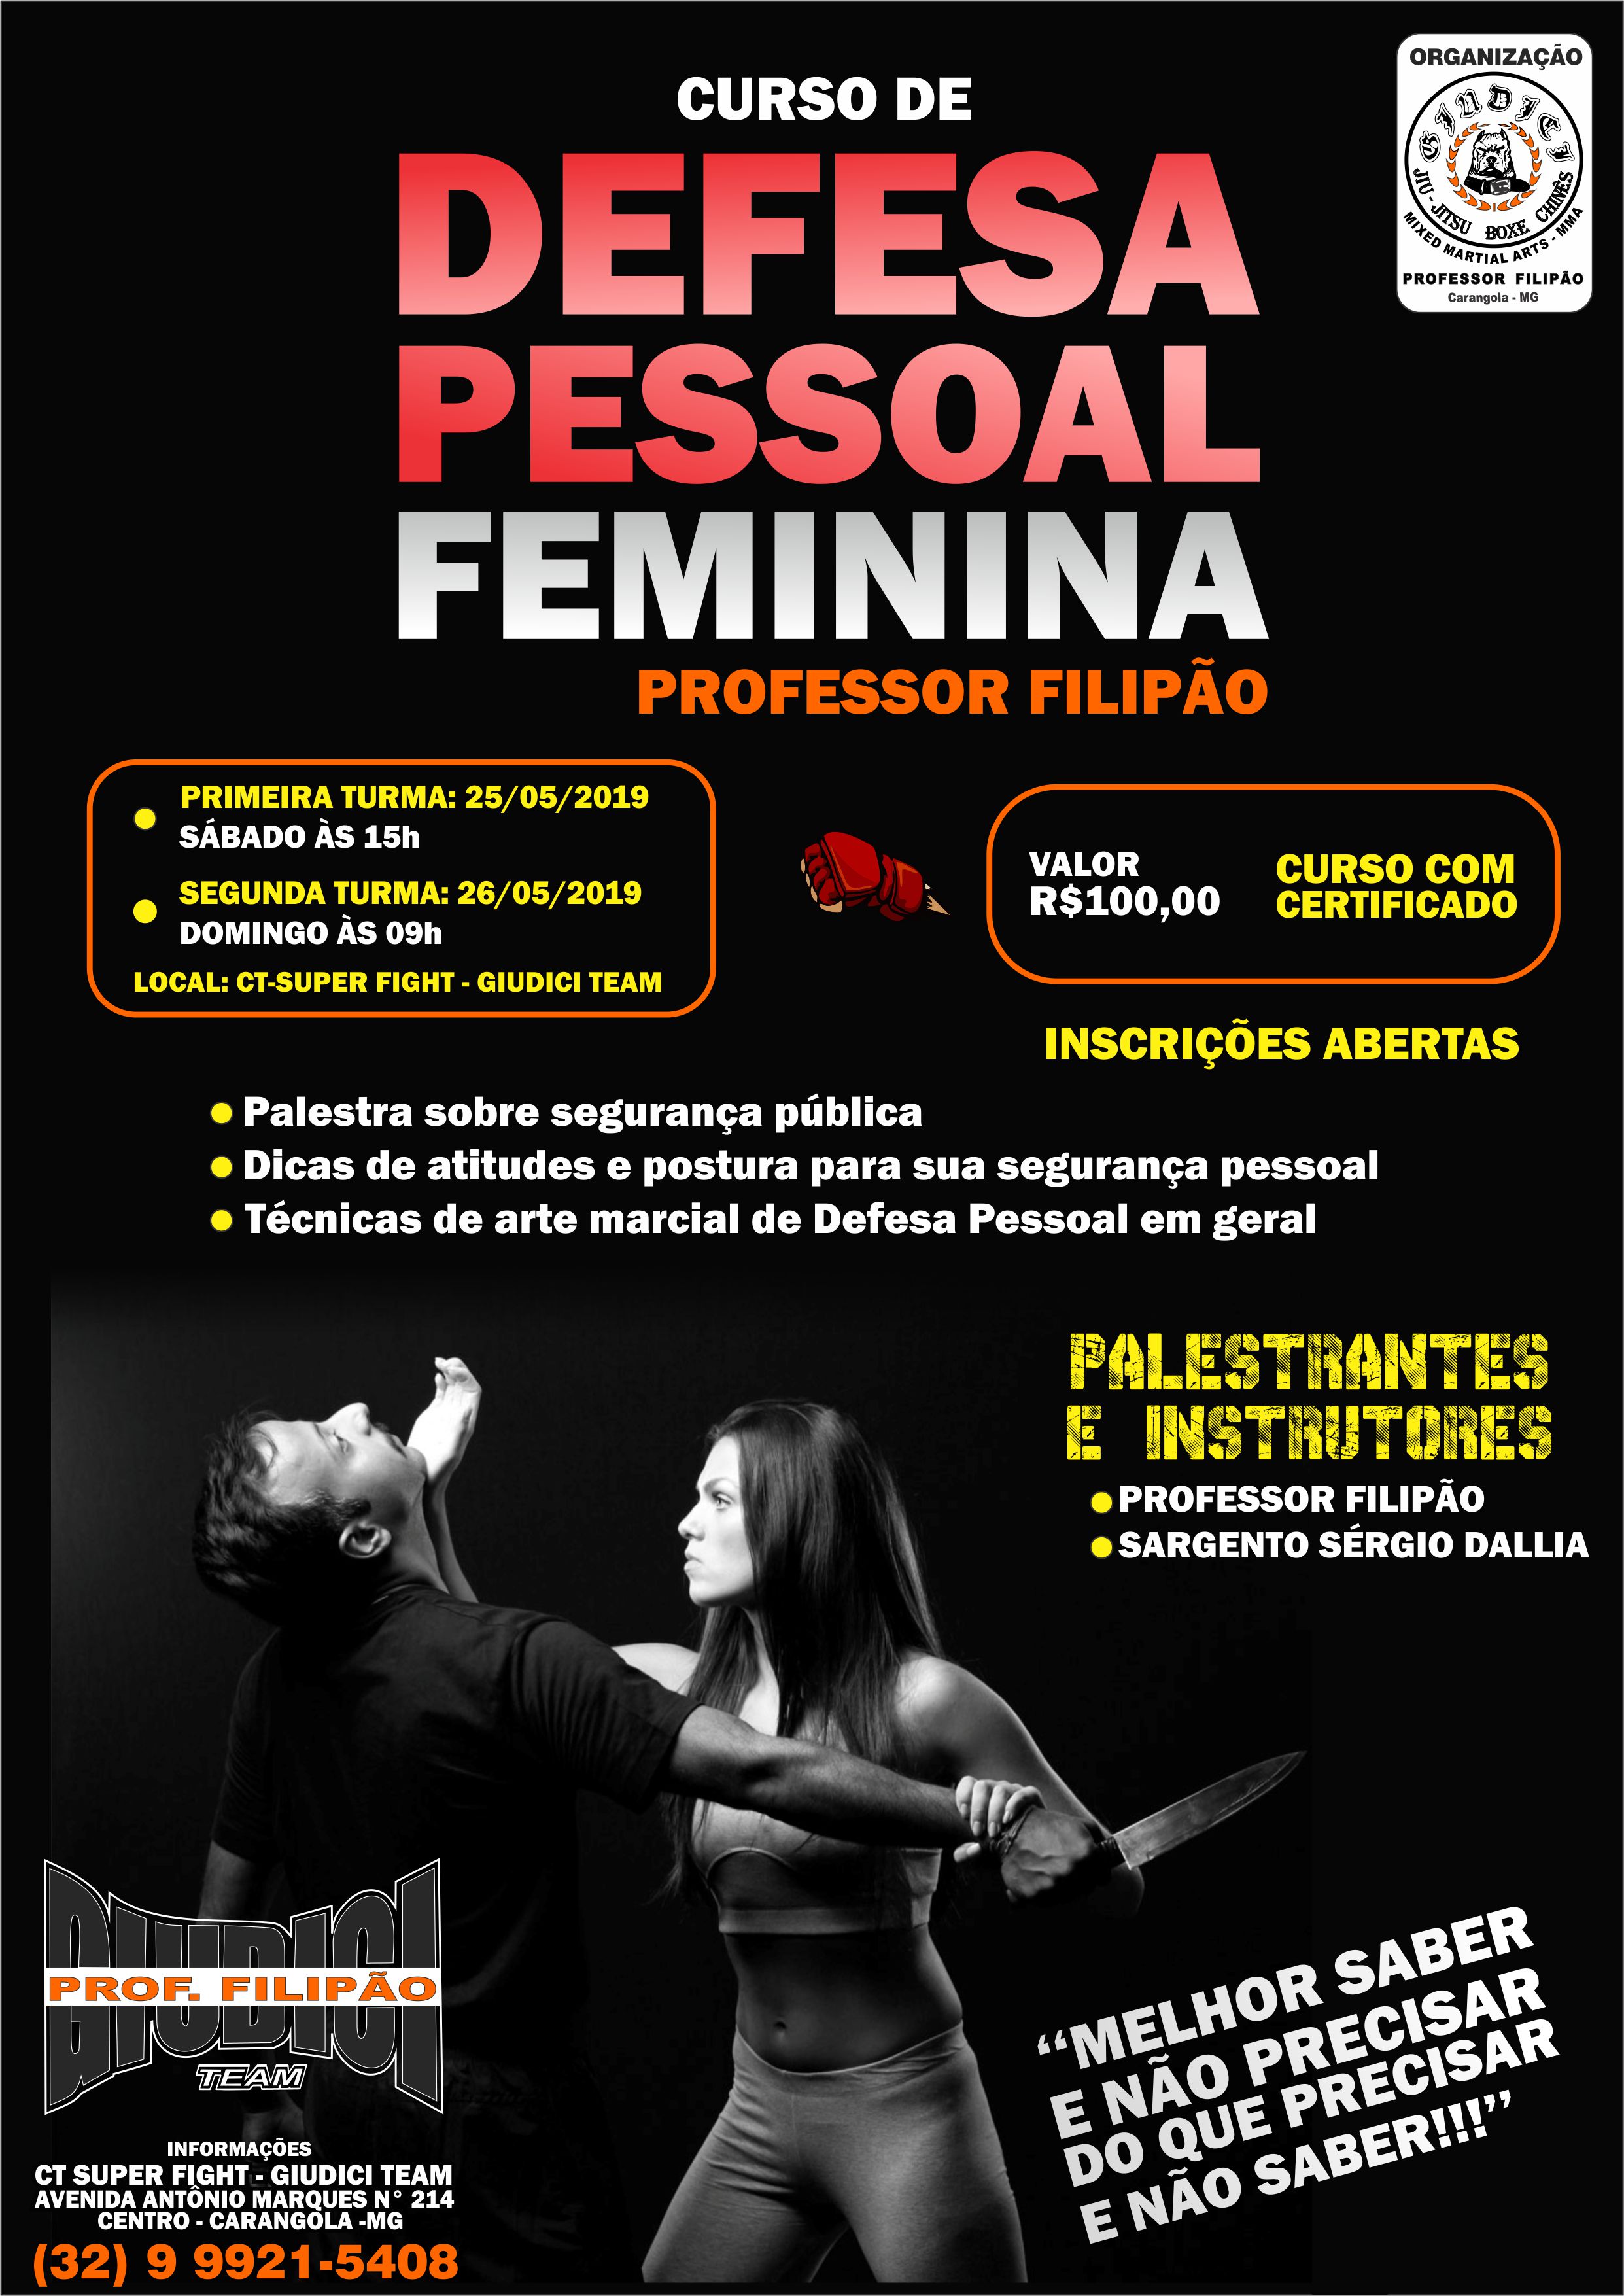 Defesa Pessoal Feminina